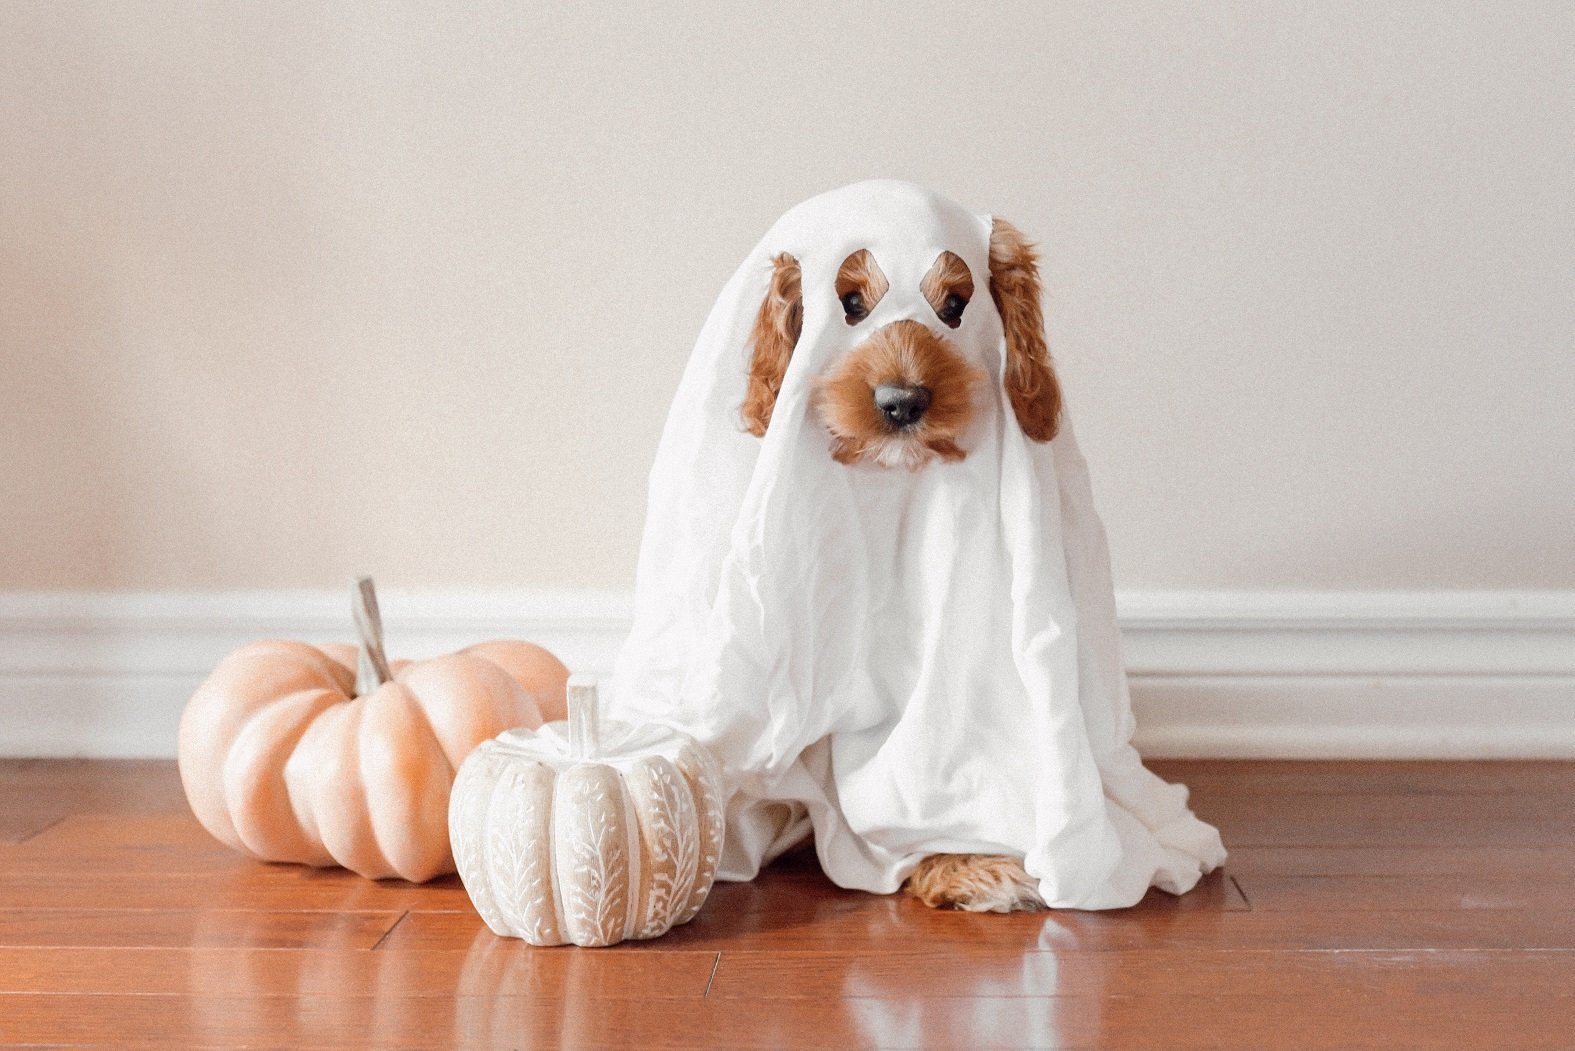 ¿Quieres ponerle un disfraz de Halloween a tu perro? Esta es la advertencia de los expertos